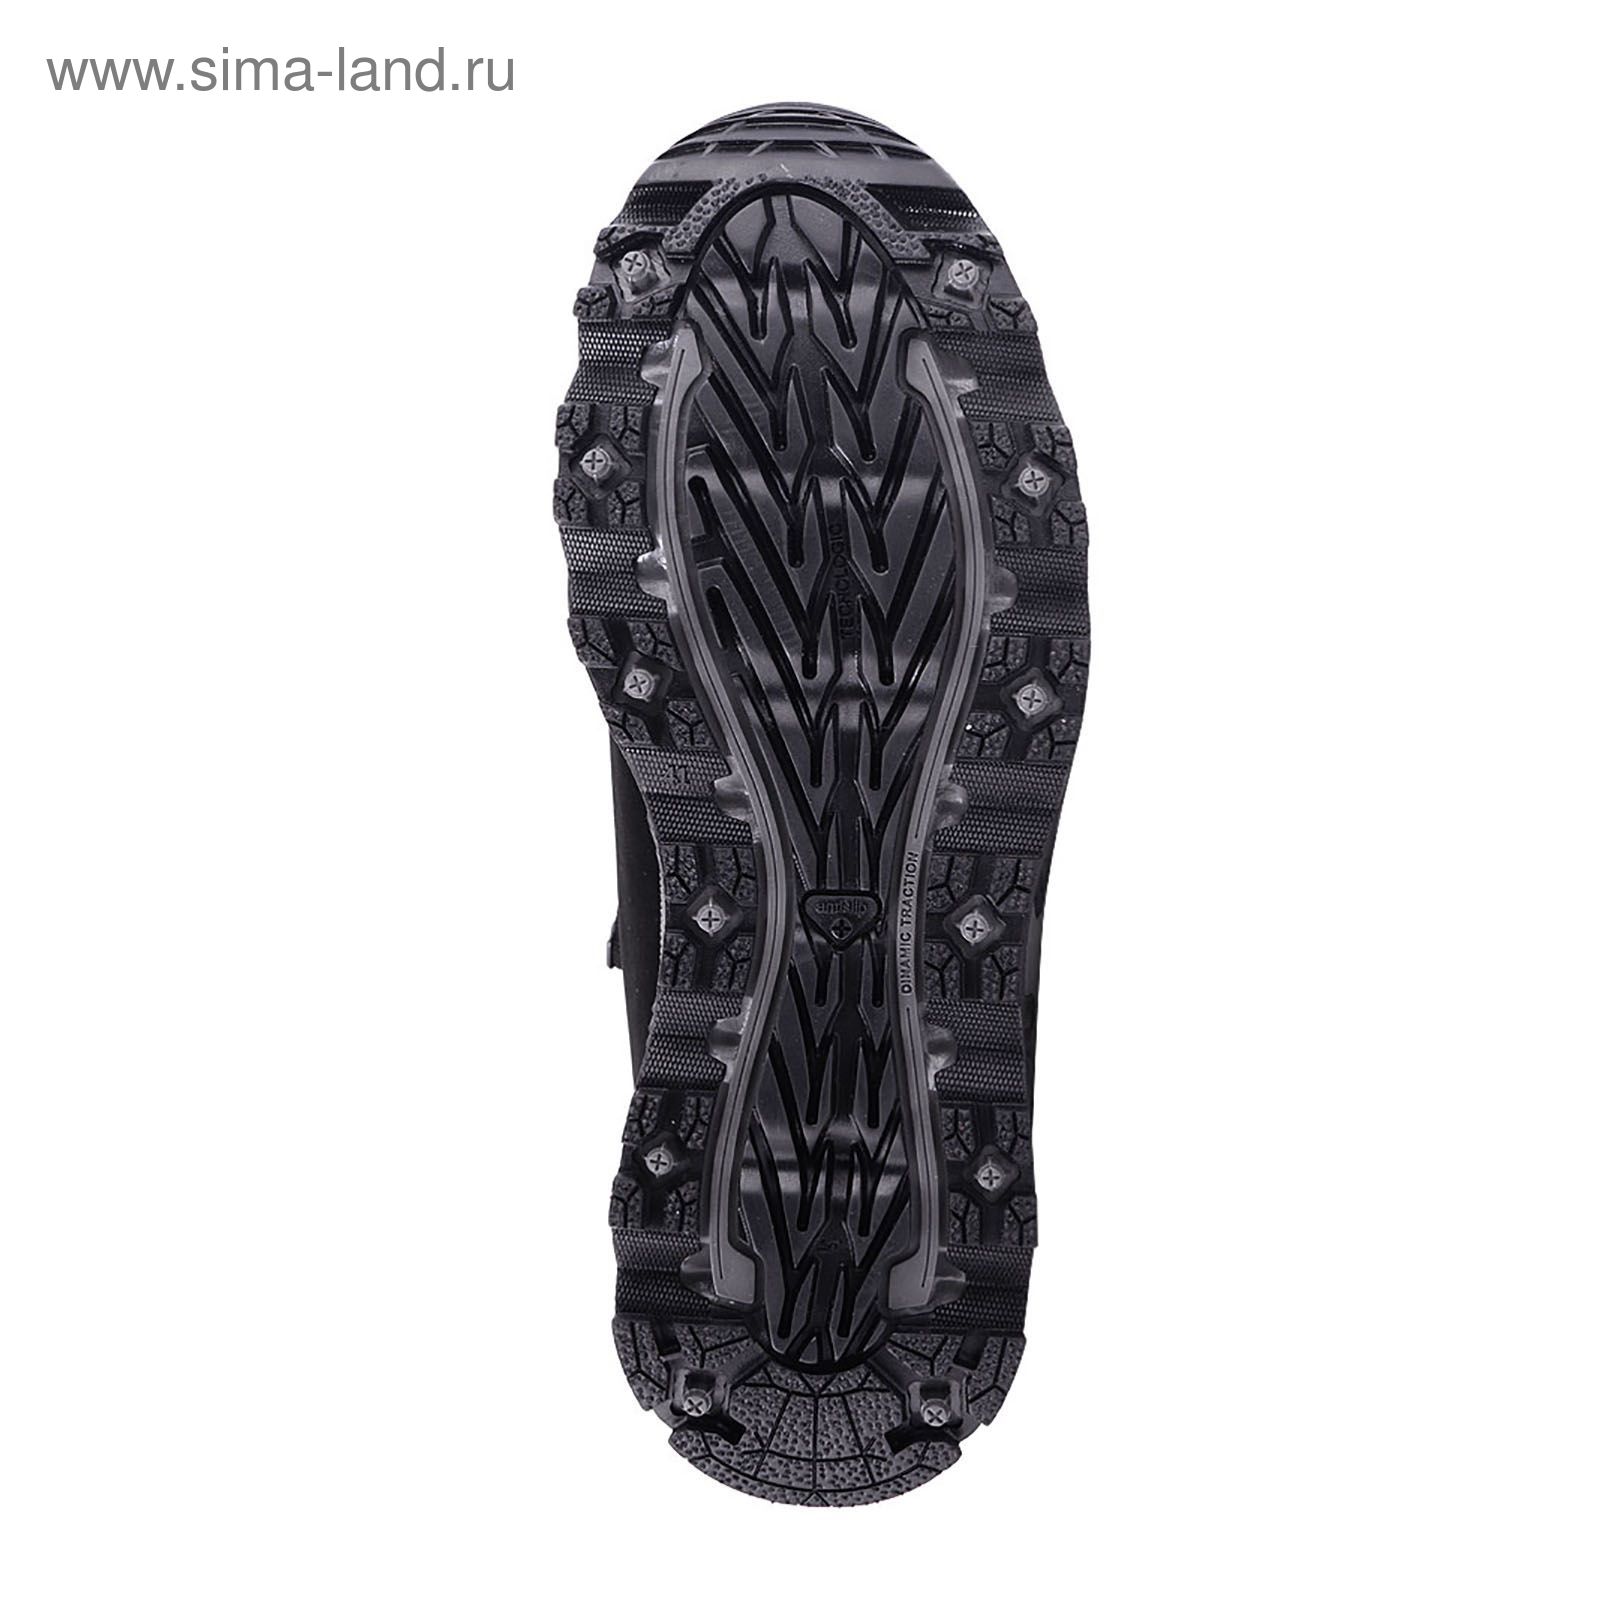 Ботинки TREK Анды 95-46 мех (нубук черный) (р.41)